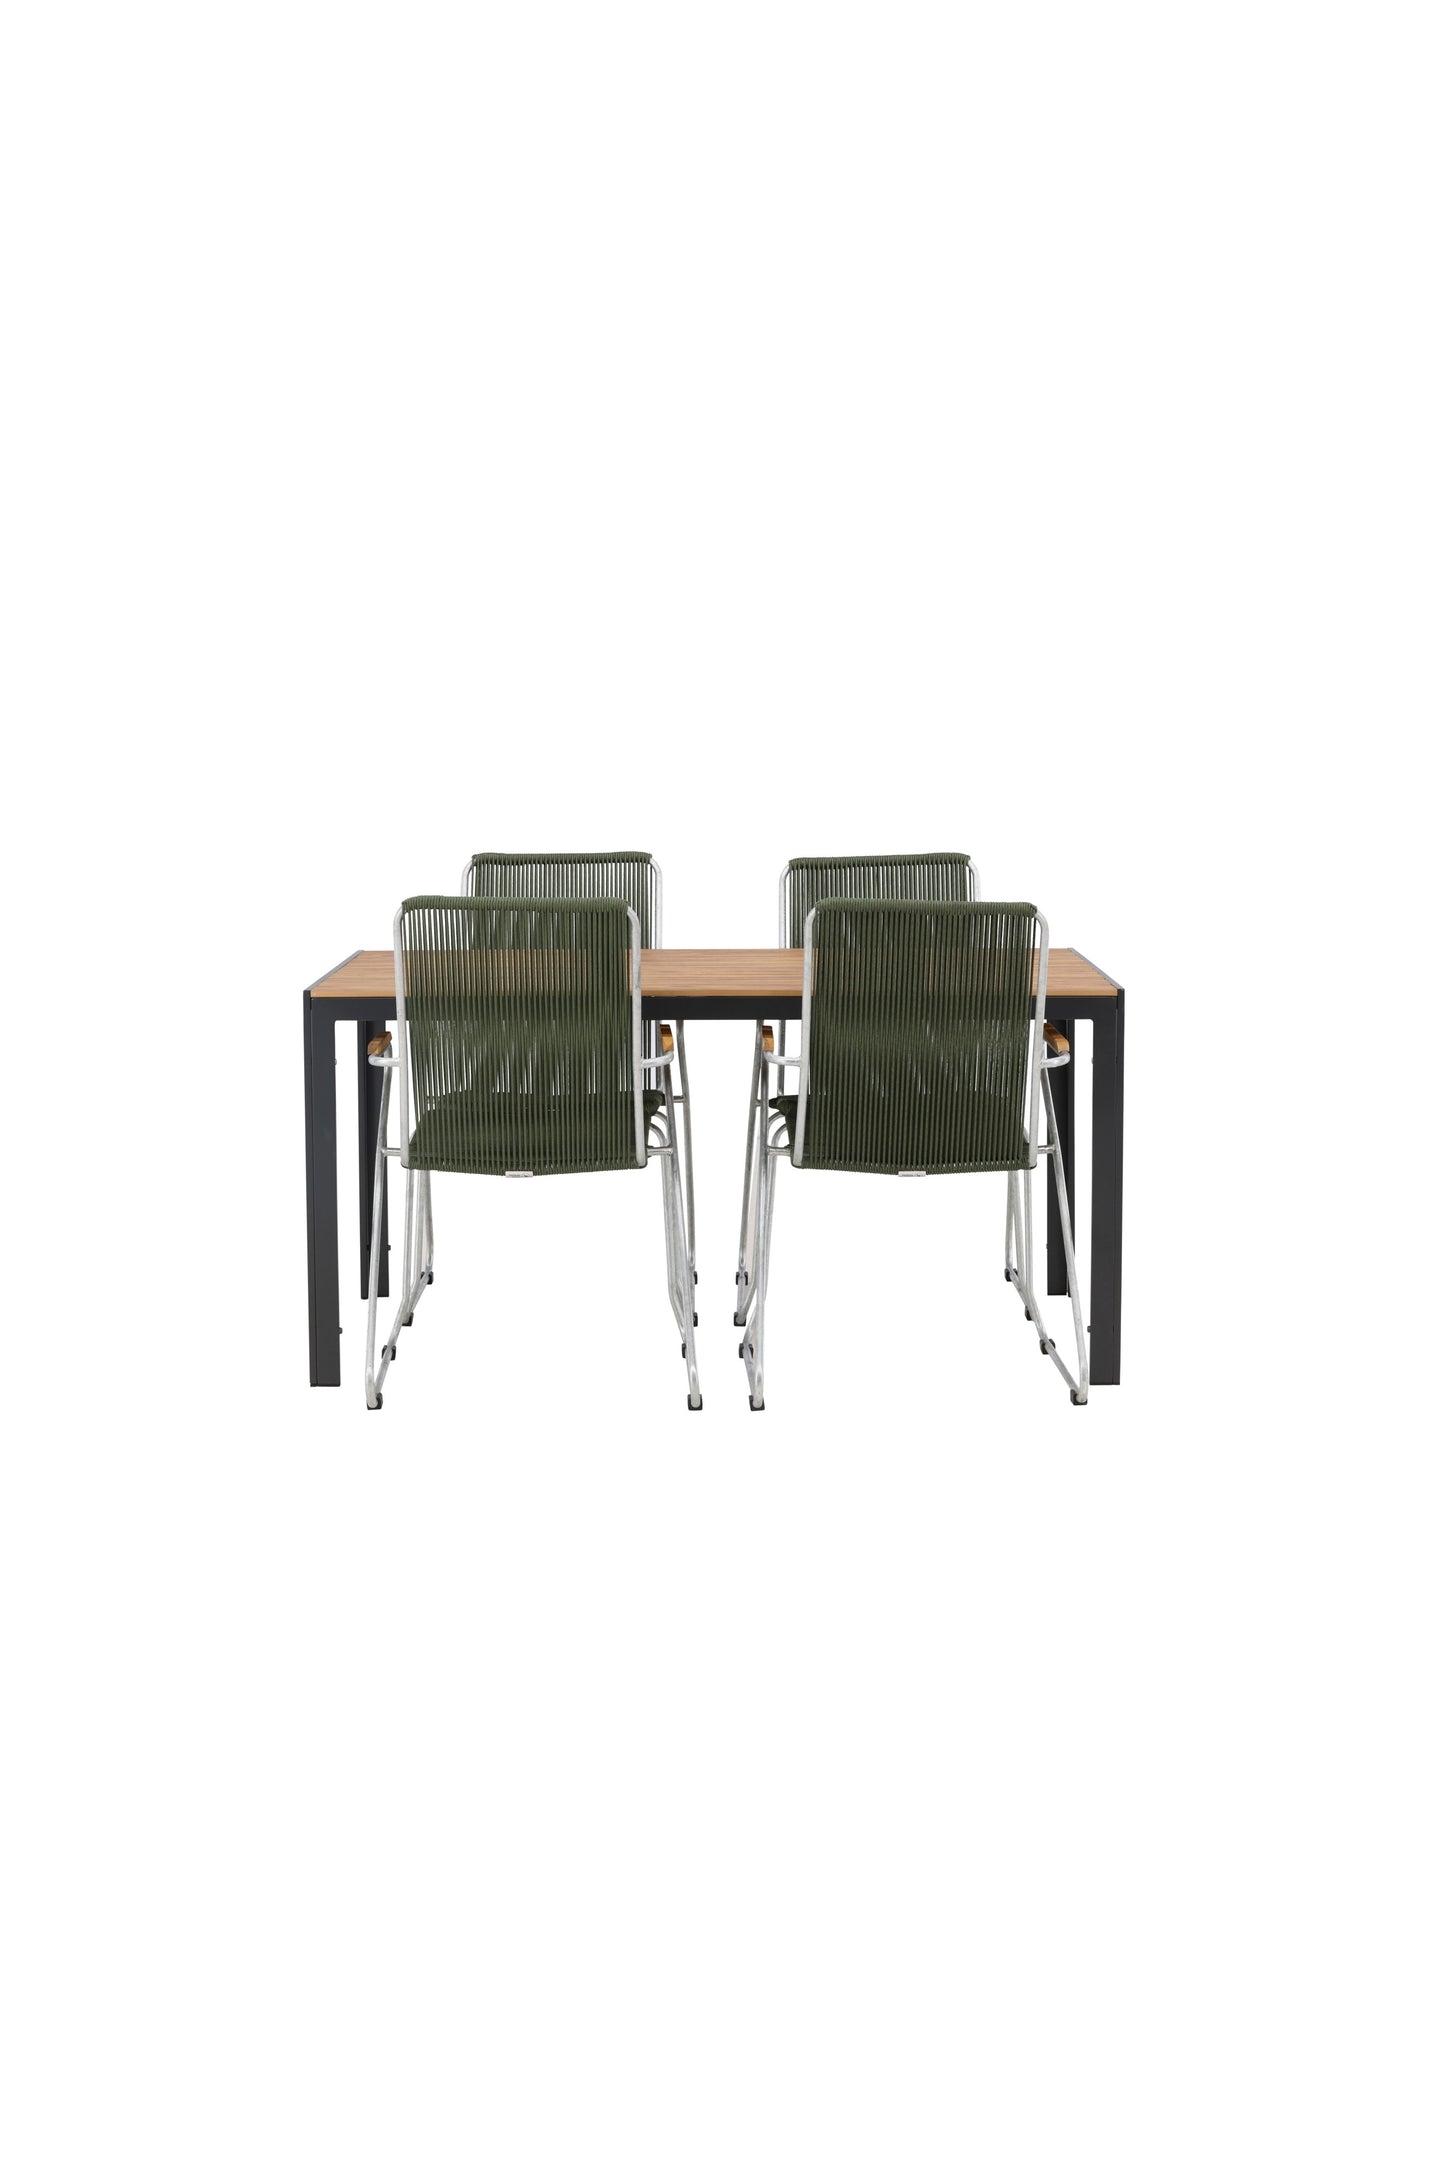 Break - Spisebord, Aluminium - Sort / Natur Rektangulær 90*150* + Bois stol Stål - Sølv / Grøn Reb